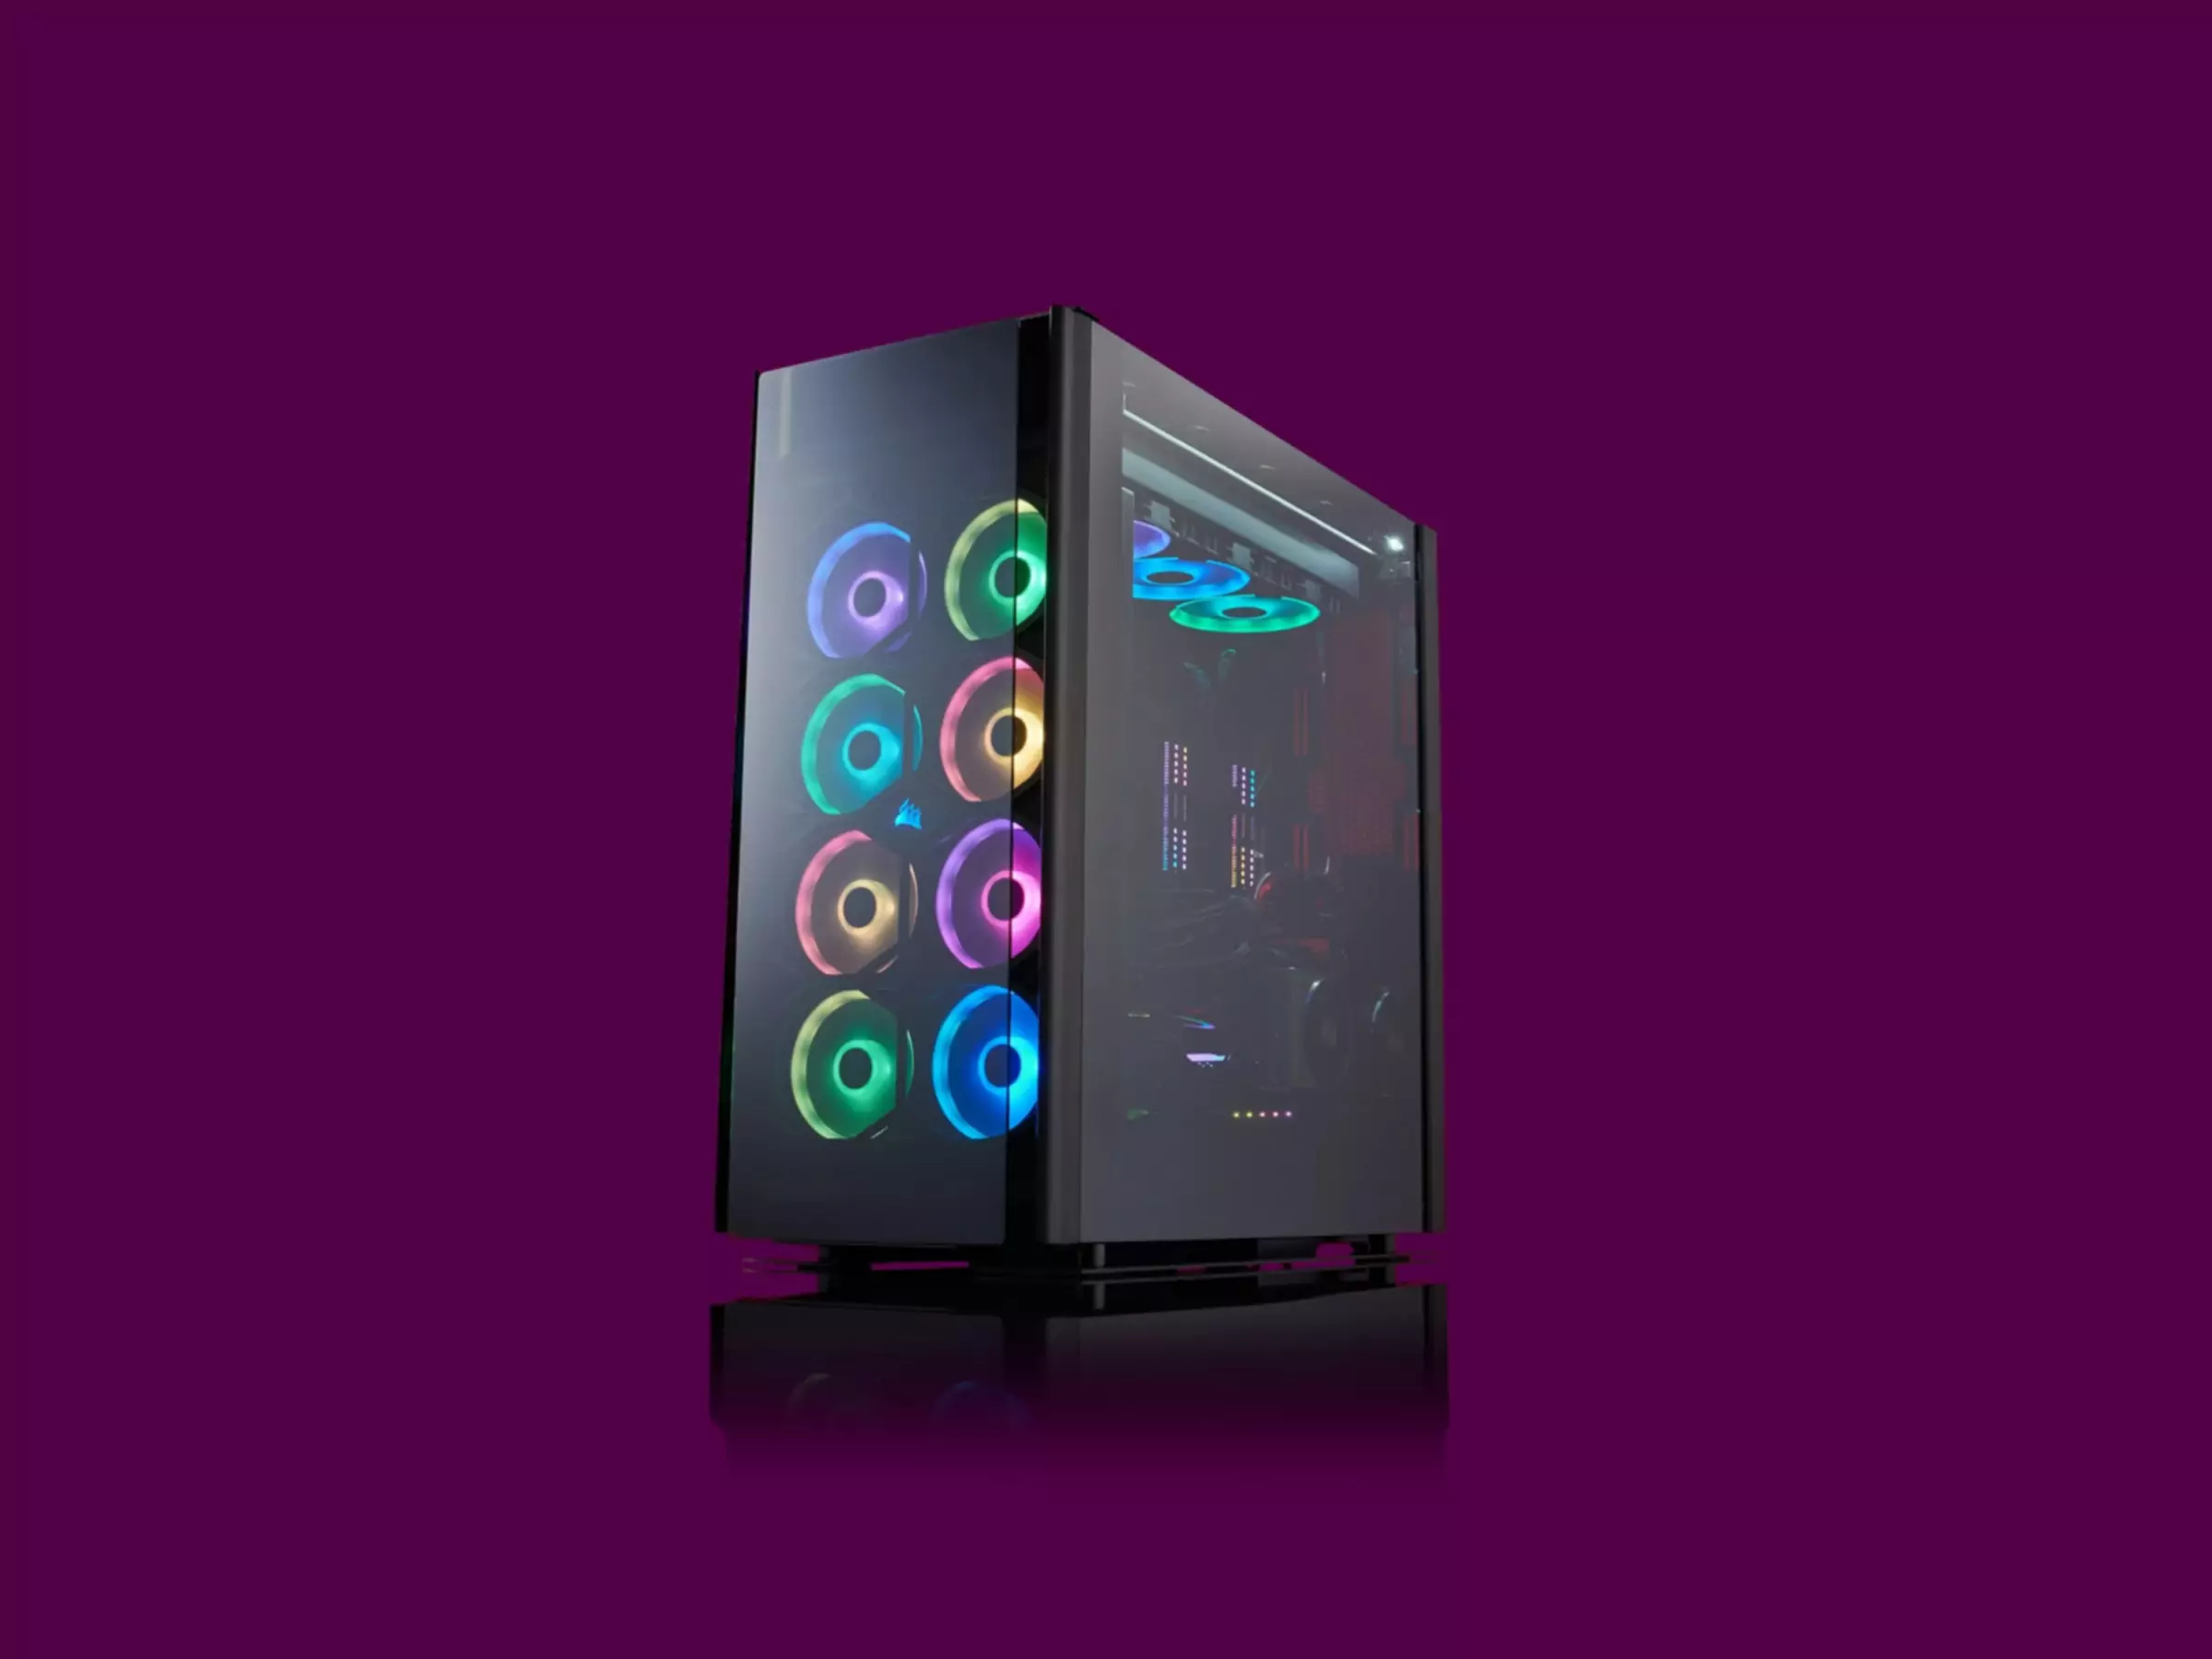 Spēļu dators, kas izgaismots ar krāsainām gaismām